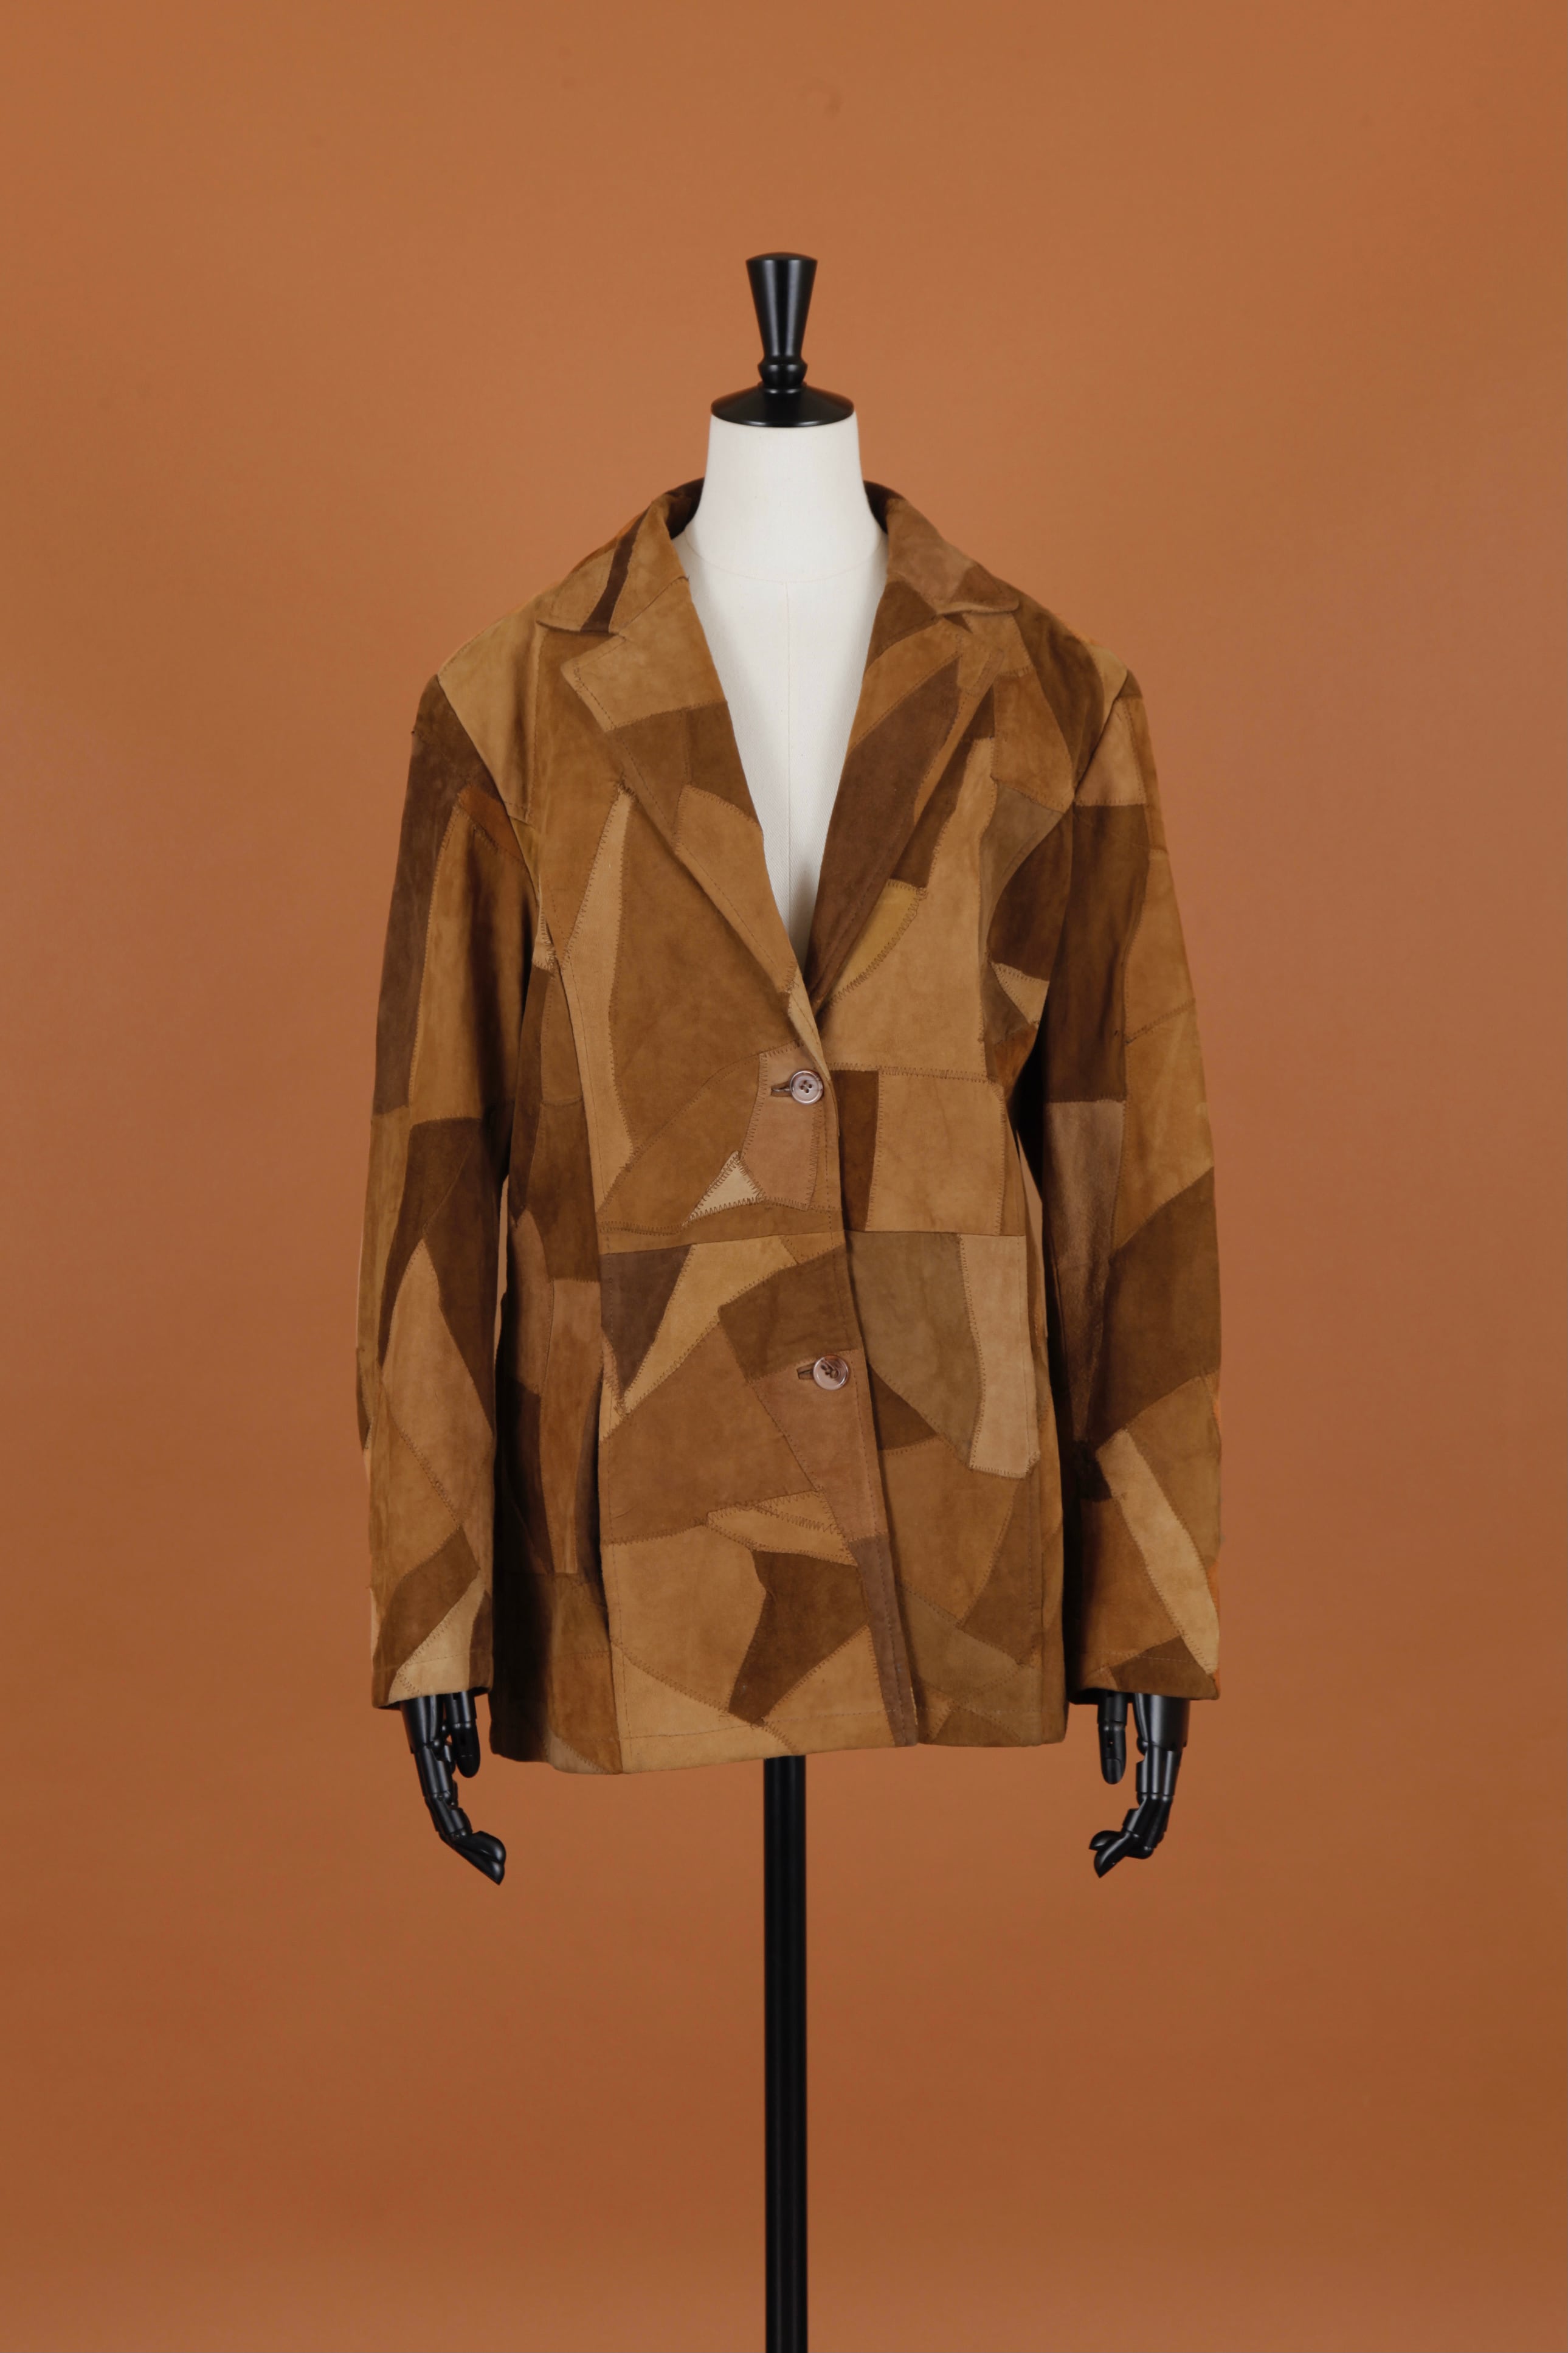 Vintage Monotone JQD tailored jacket